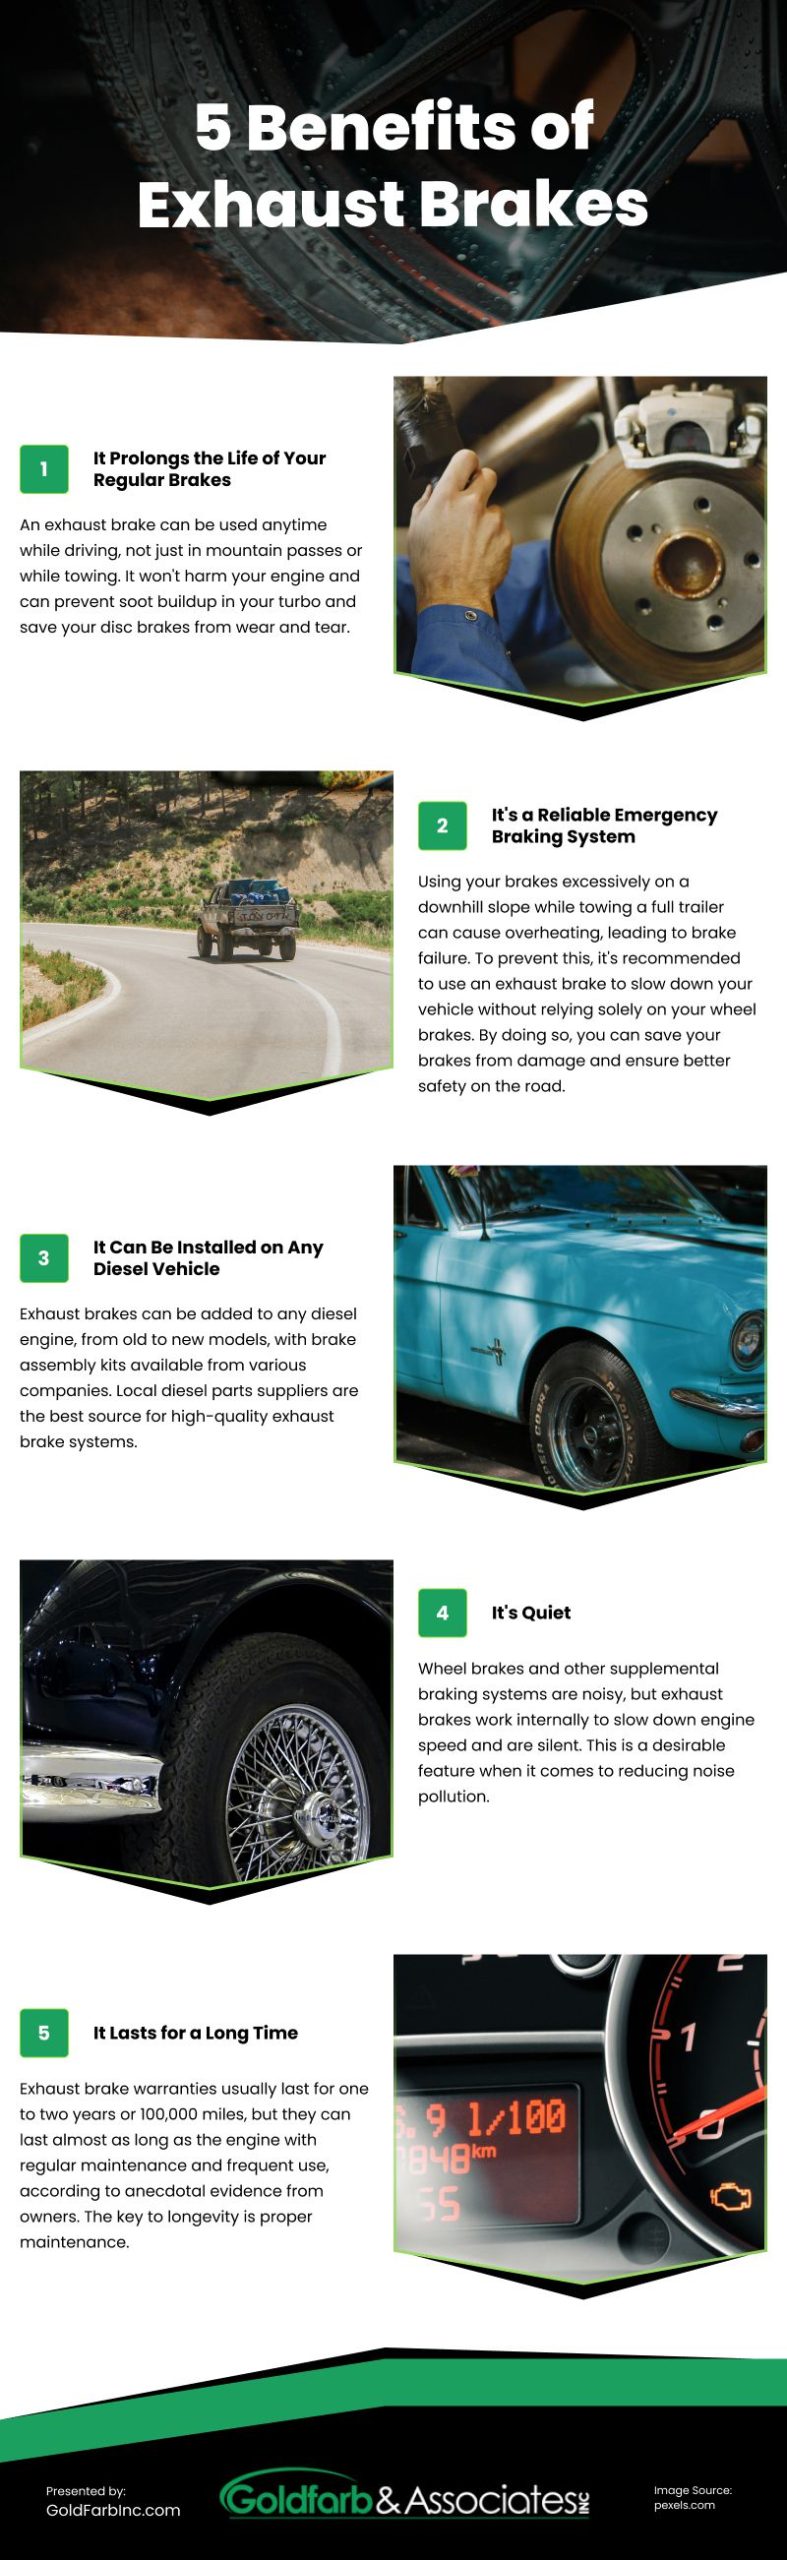 5 Benefits of Exhaust Breaks Infographic